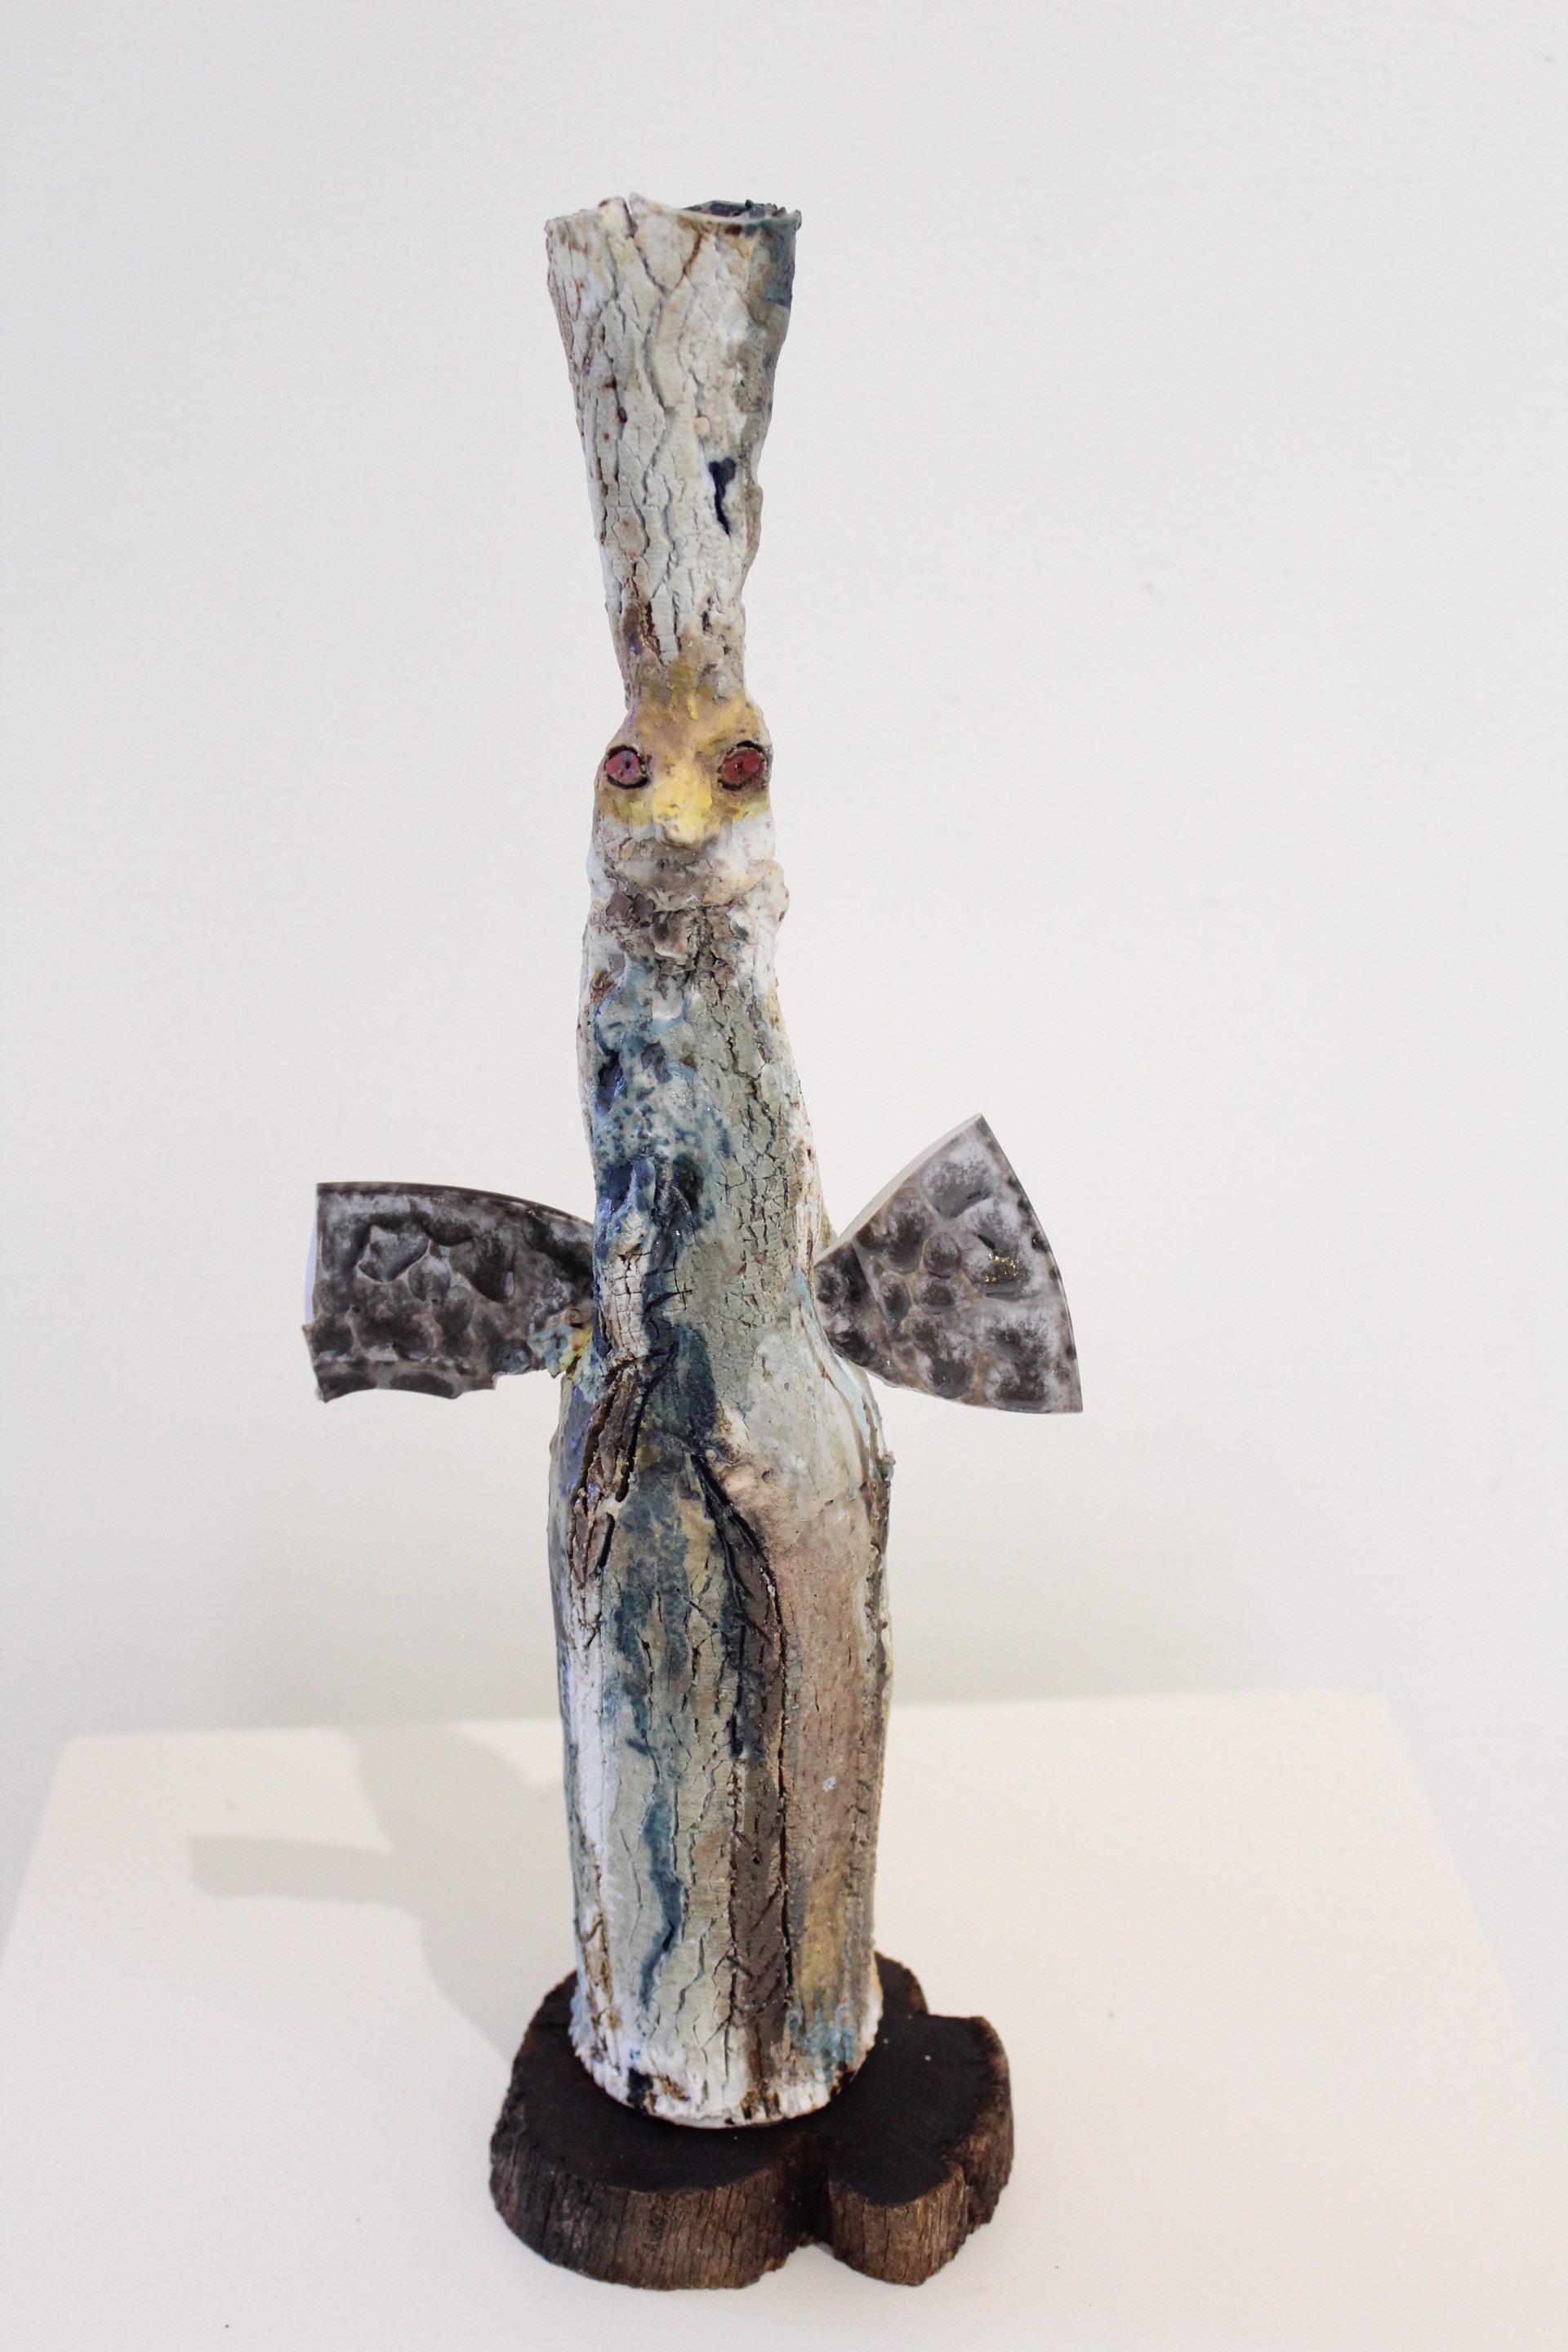 Egyptian Blue Bird (candlestick, 77) by Rebecca Jones